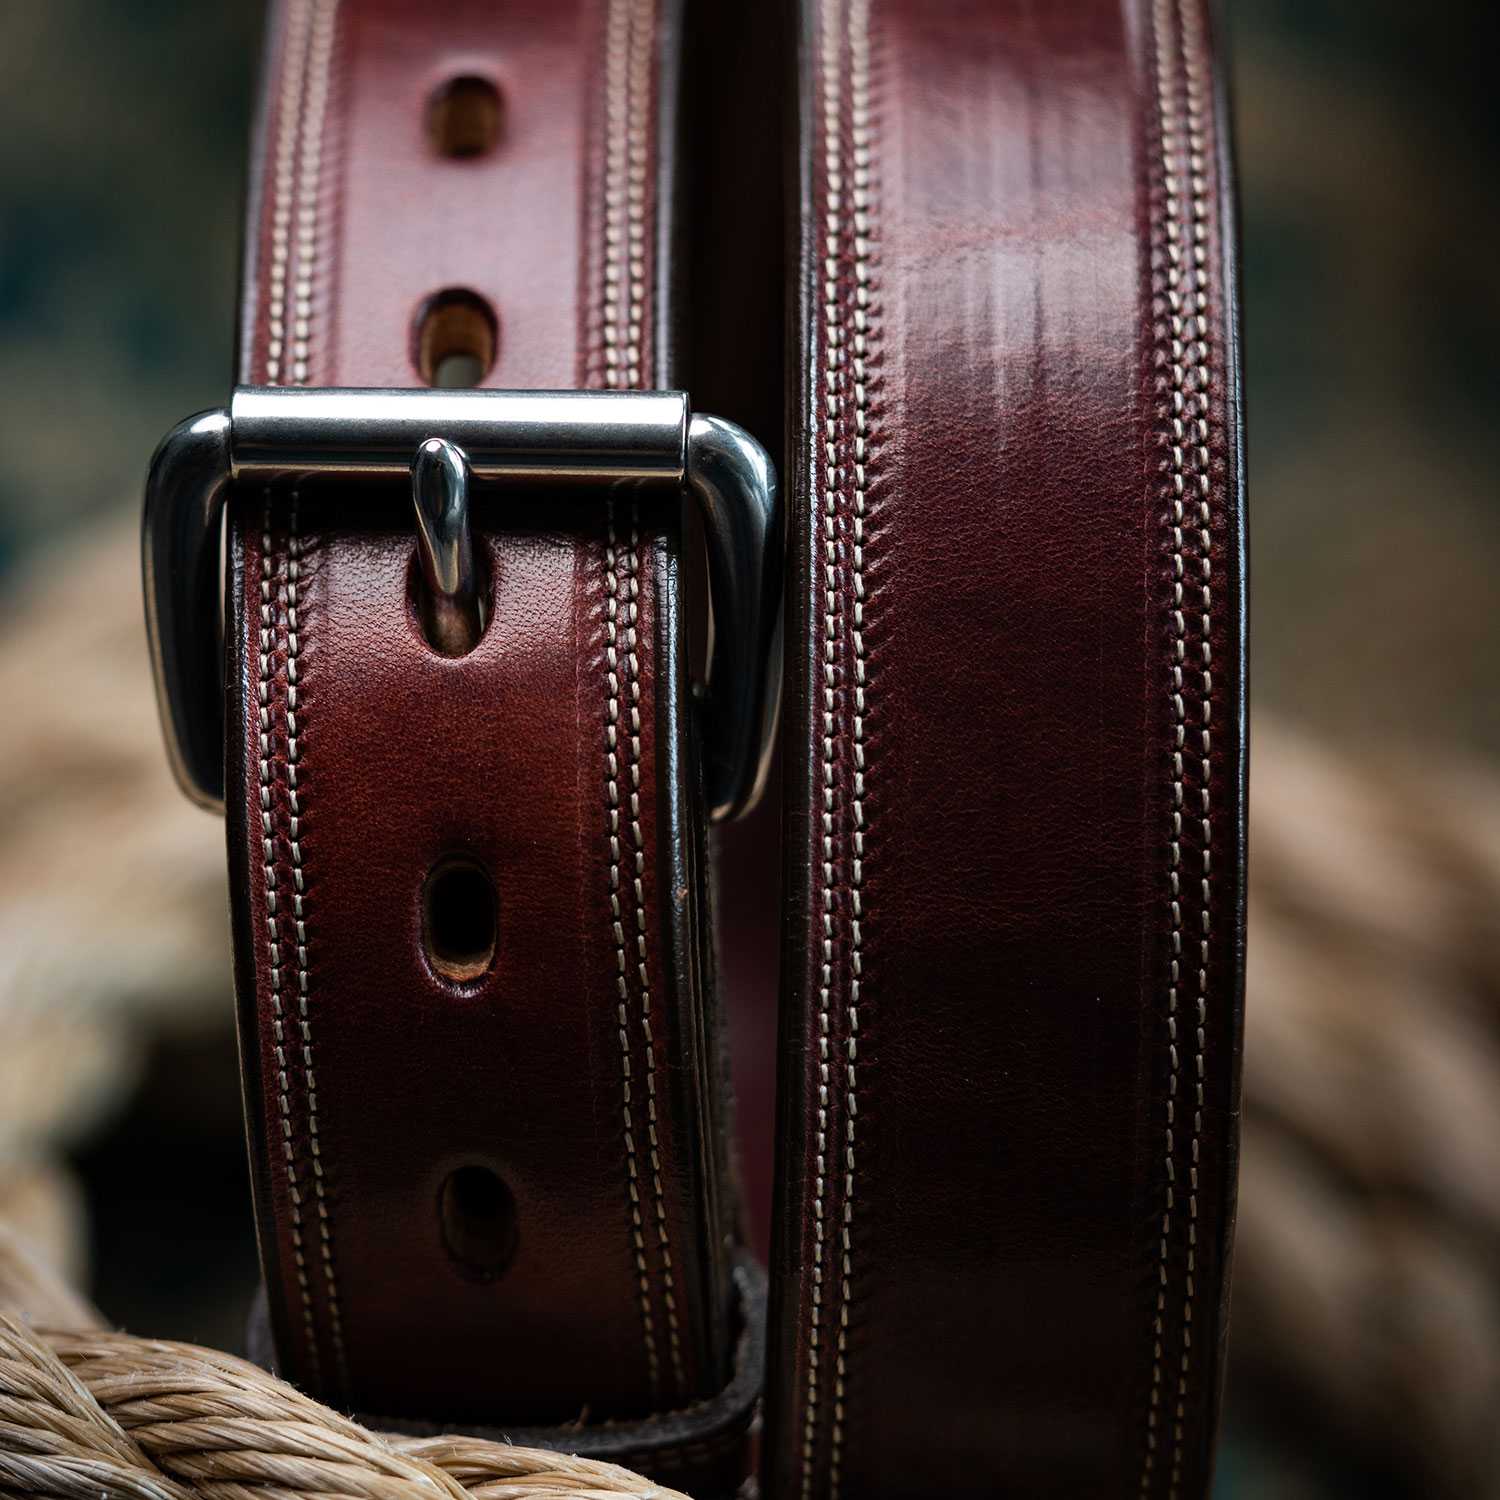 Premier Leather Gun Belt-Free Shipping-100 Year Warranty - Hanks Belts